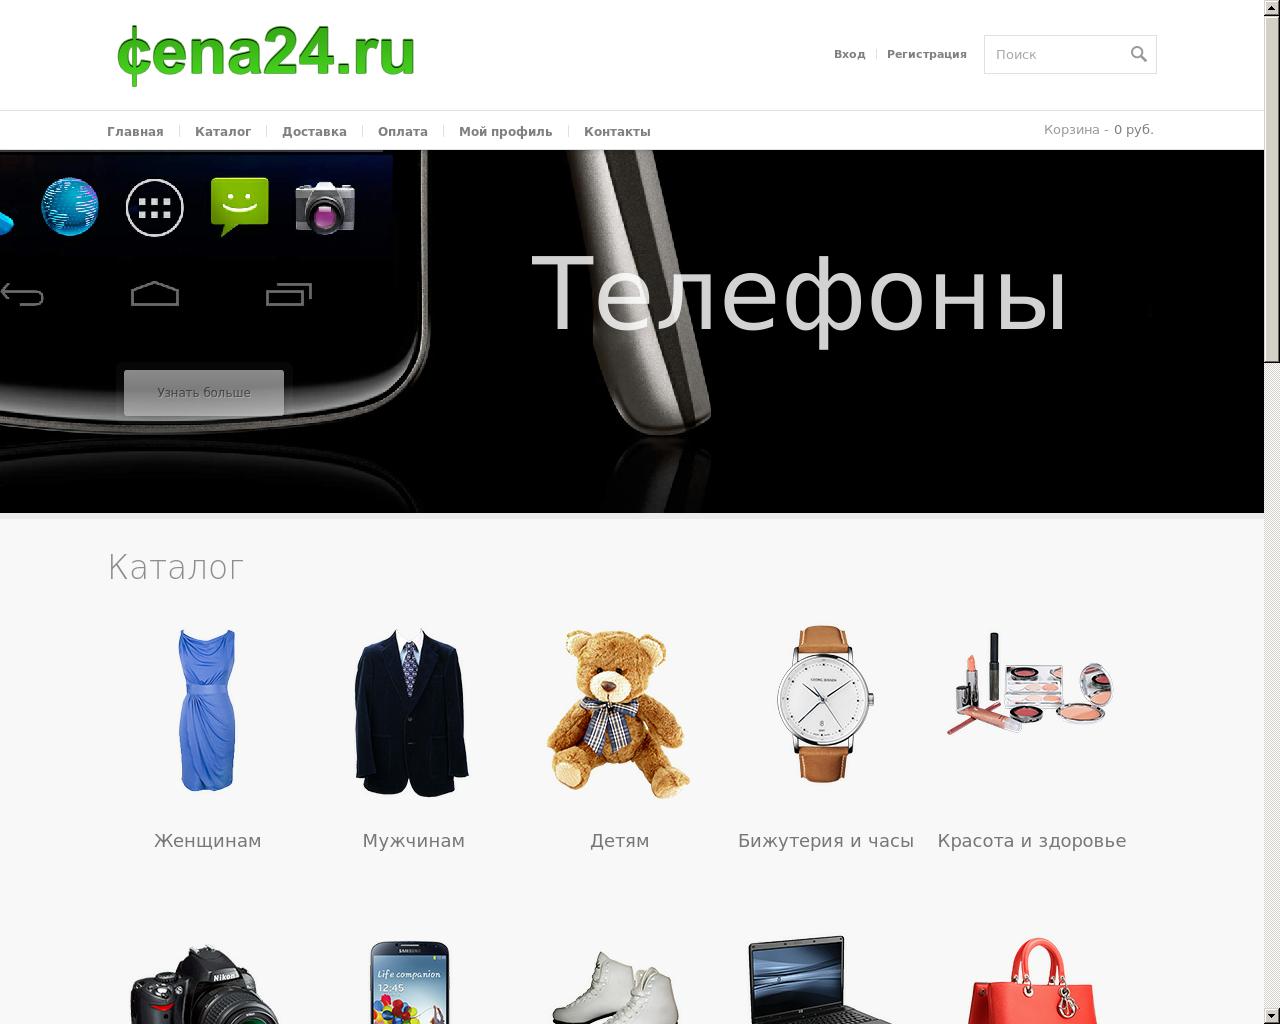 Изображение сайта cena24.ru в разрешении 1280x1024